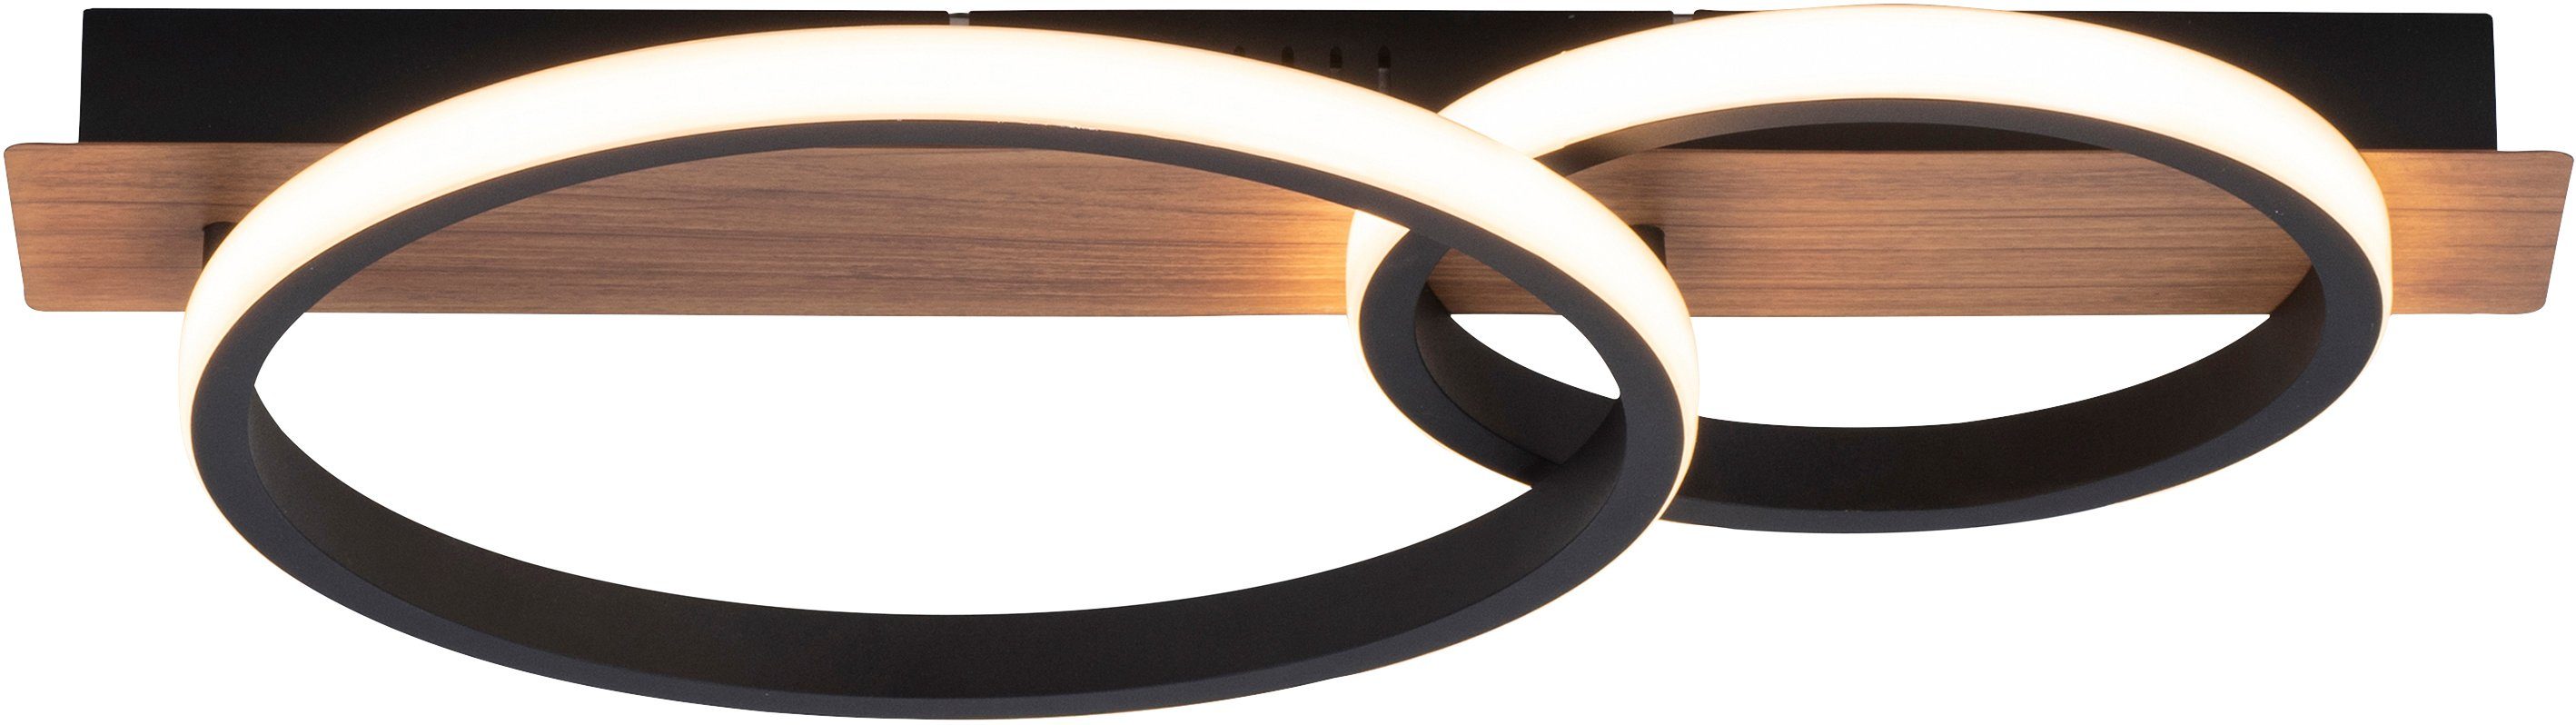 Dekor integriert, Home LED LED Holz fest Deckenlampe Molay, affaire Warmweiß, warmweißes Deckenleuchte Licht,